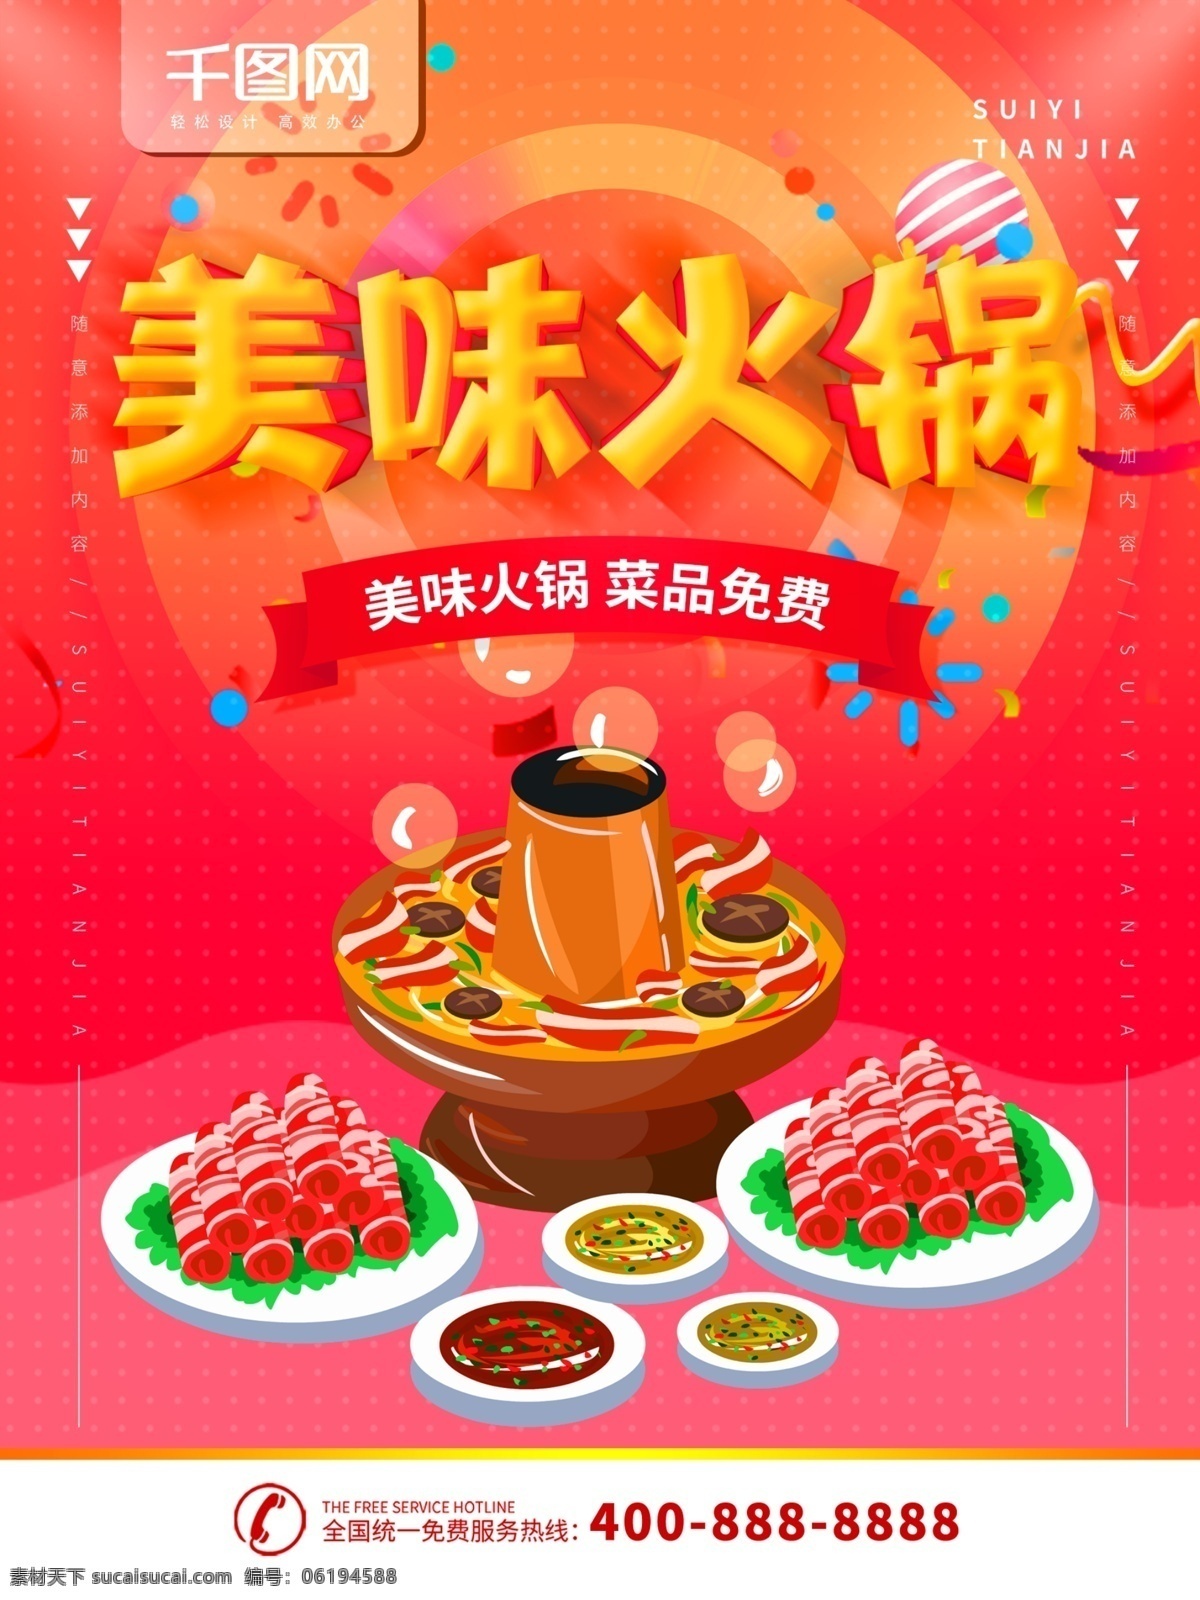 简约 红色 美食 海报 美味 火锅 宣传海报 宣传 简约红色 美食海报 美味火锅